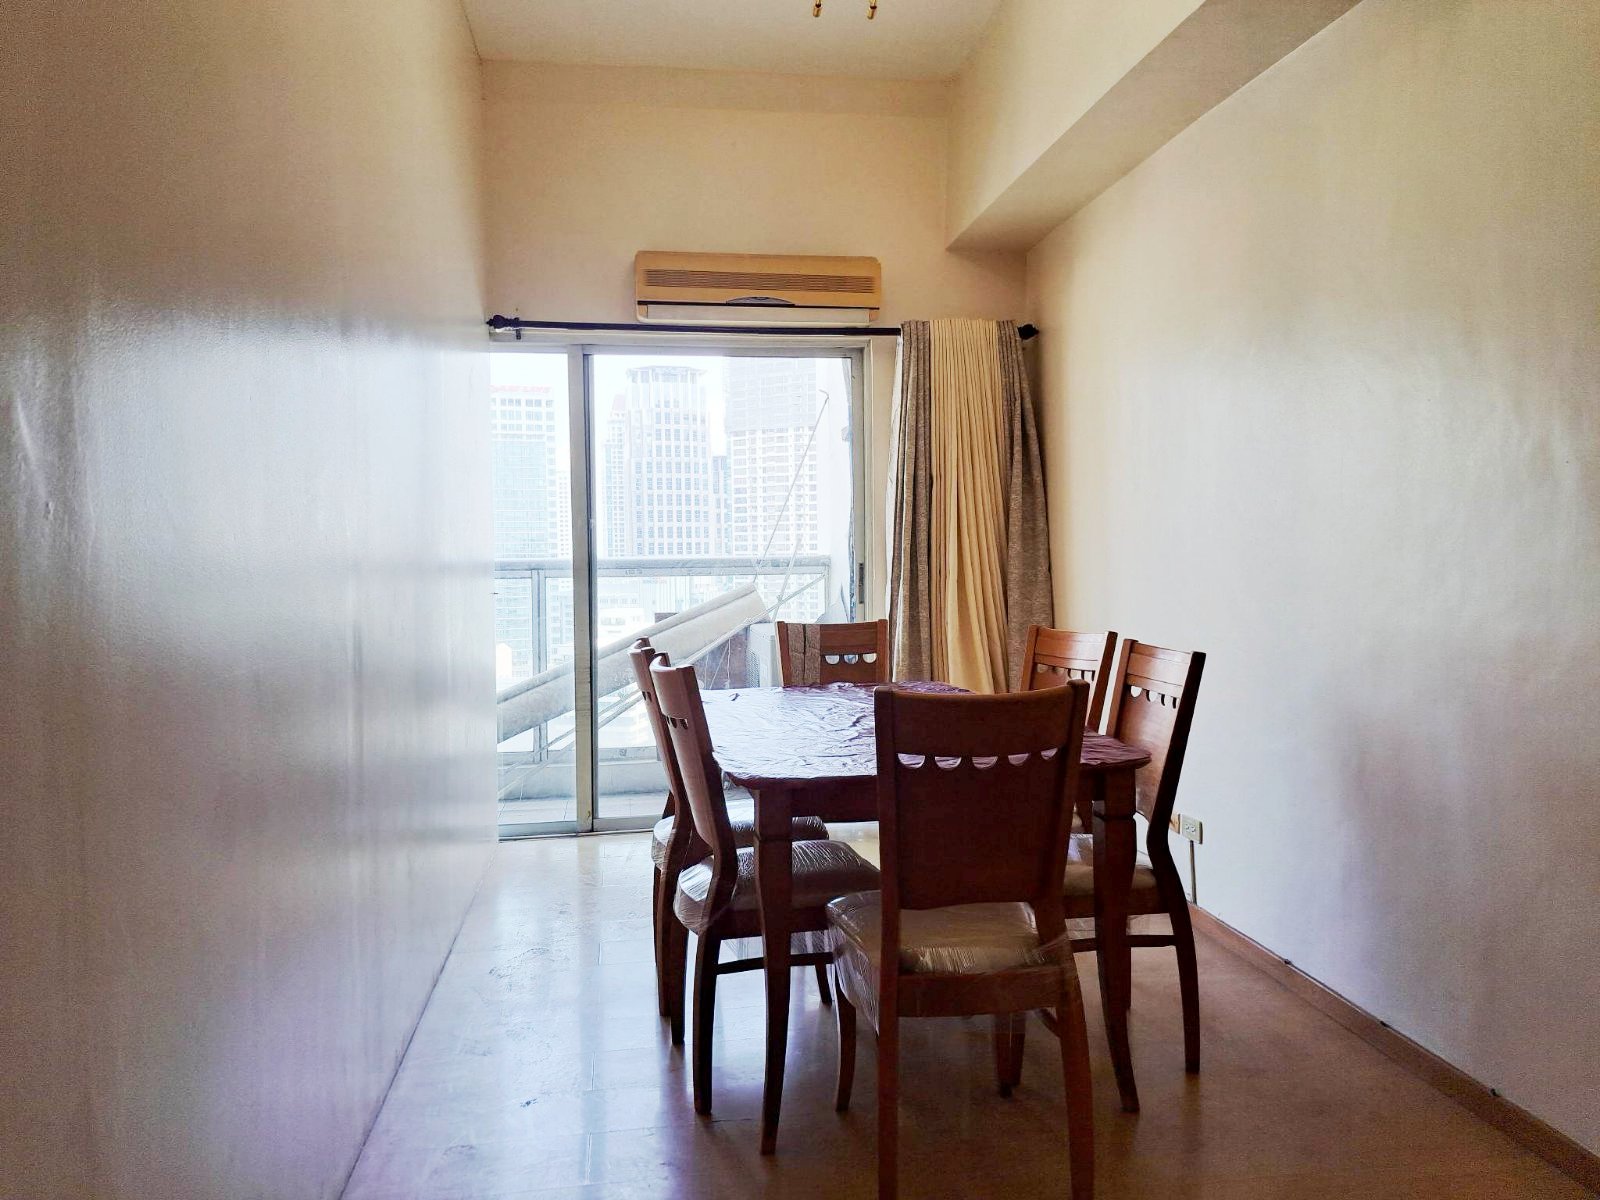 Elizabeth Place - Condominium in Salcedo Village, Makati